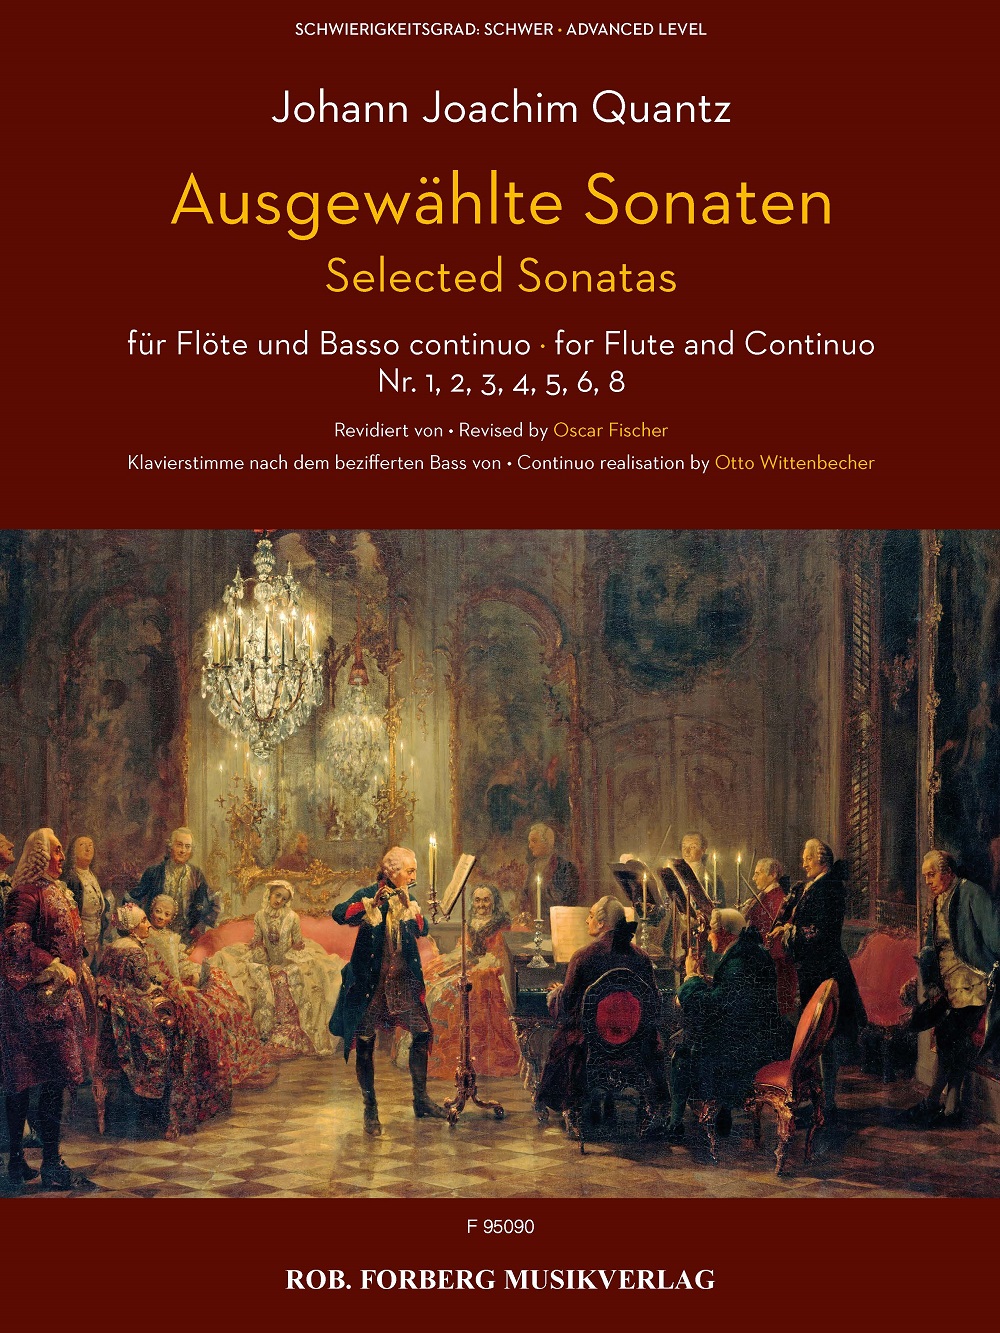 Ausgewählte Sonaten Für Flöte Und Basso Continuo (QUANTZ JOHANN JOACHIM)